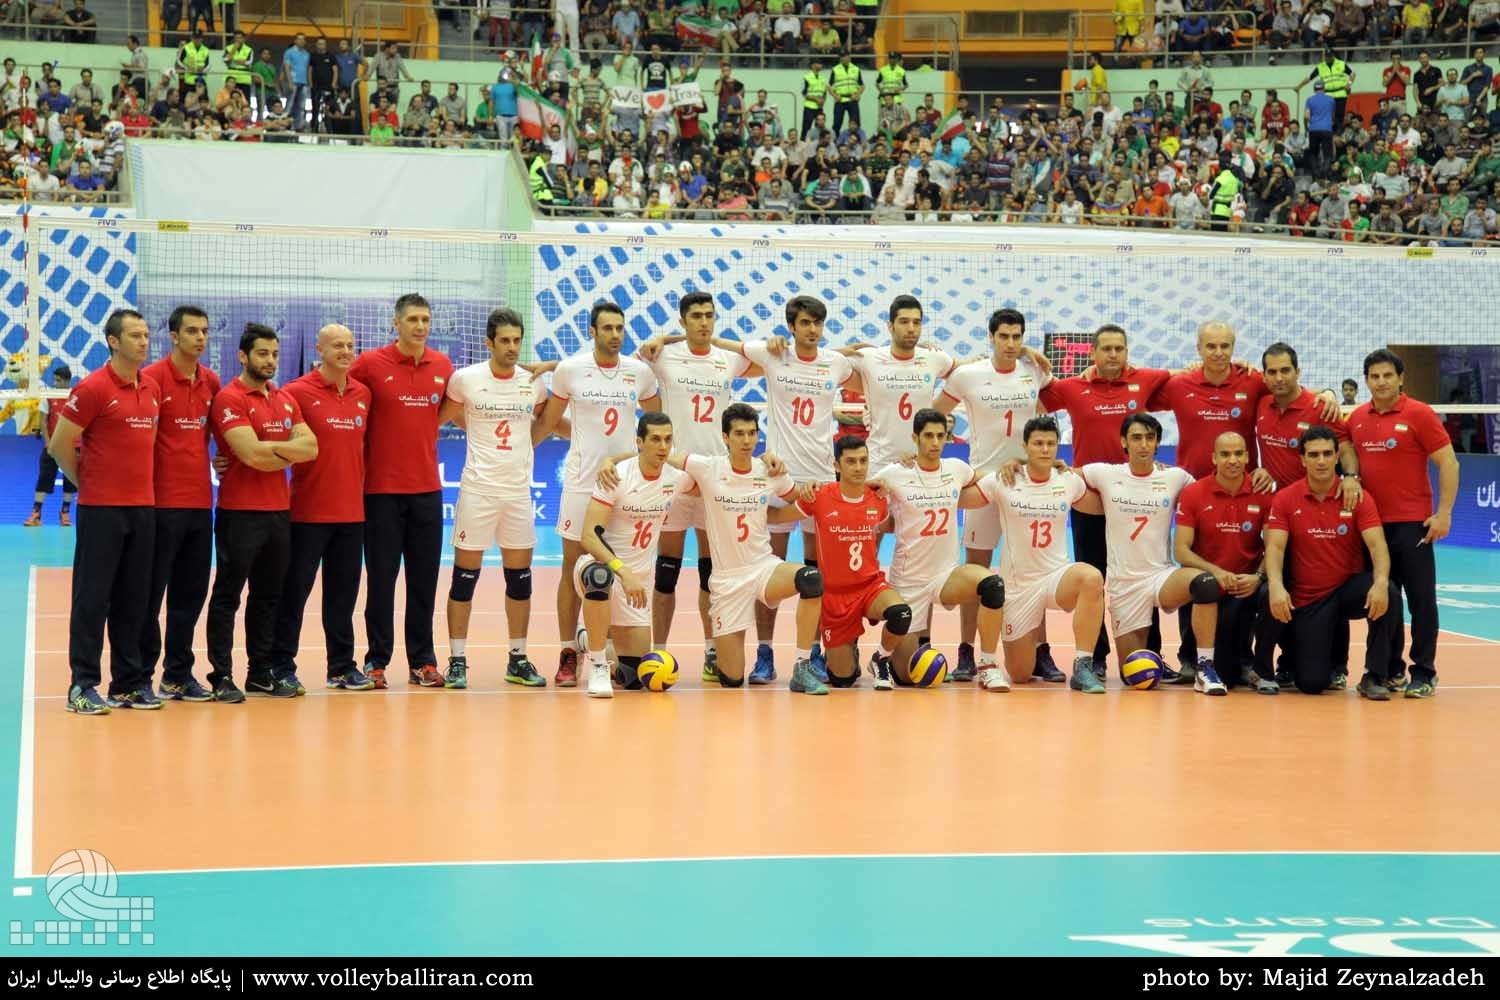 افتخاری دیگر برای والیبال ایران